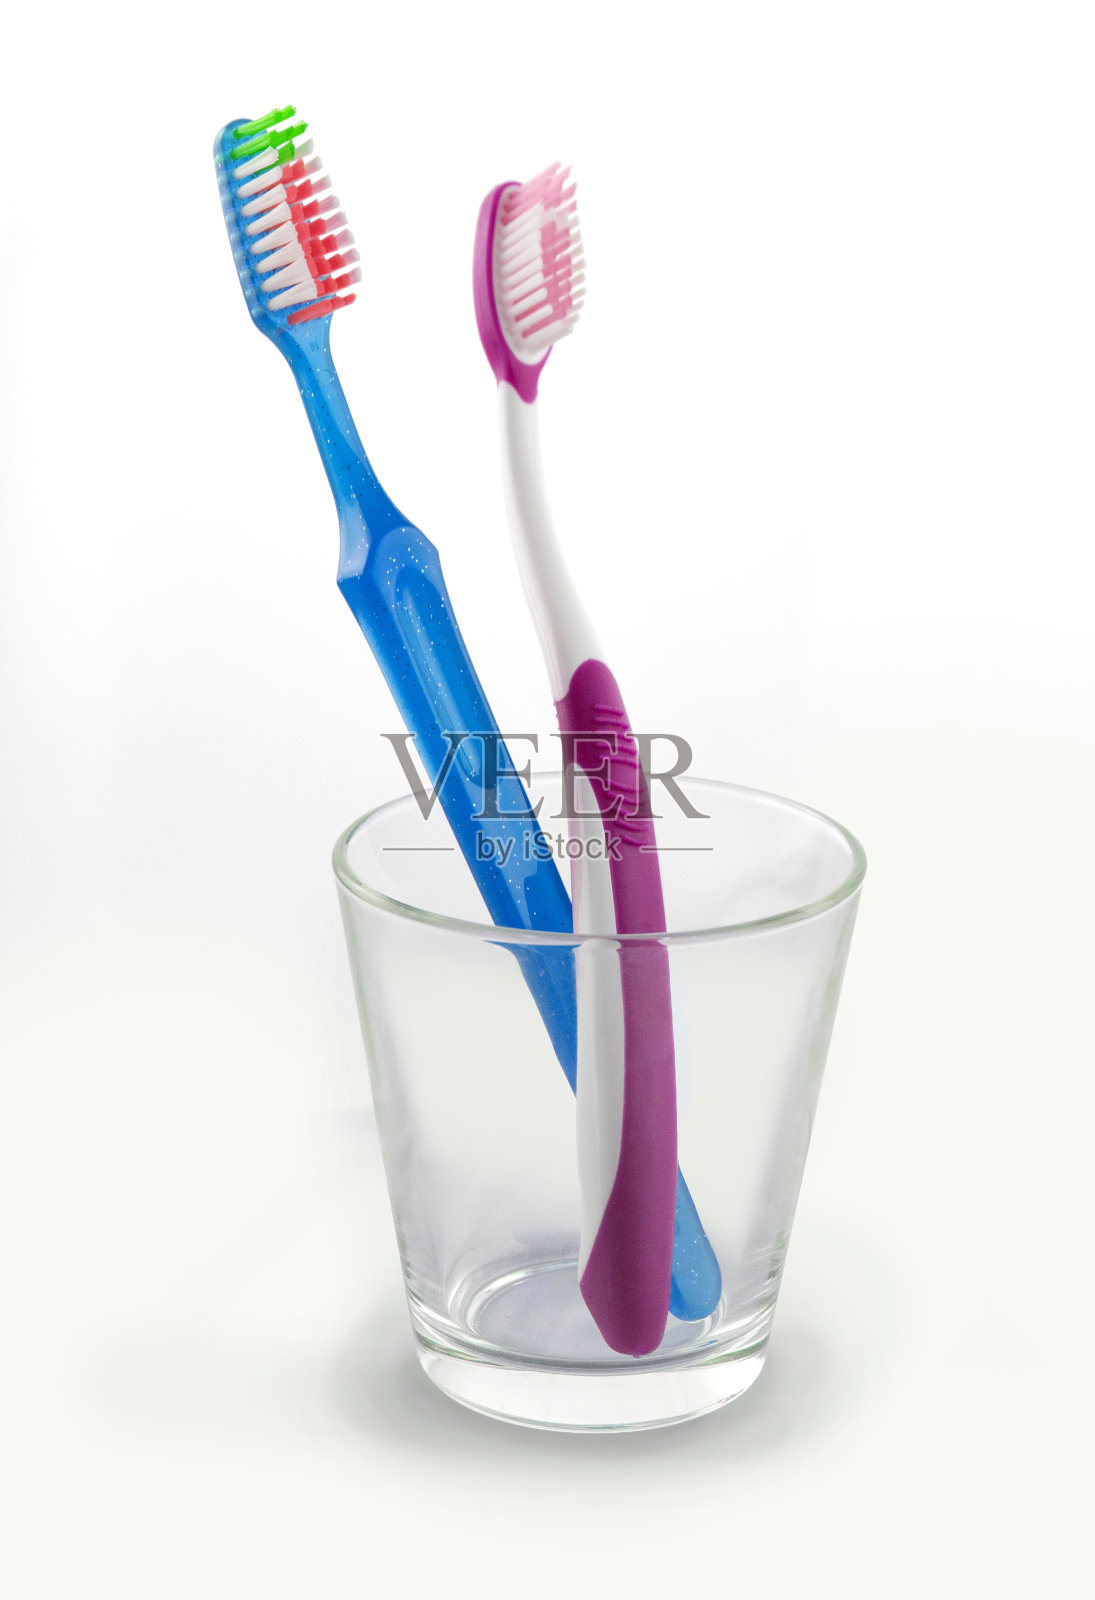 一只蓝色的牙刷，一只粉红色的装在玻璃杯里照片摄影图片